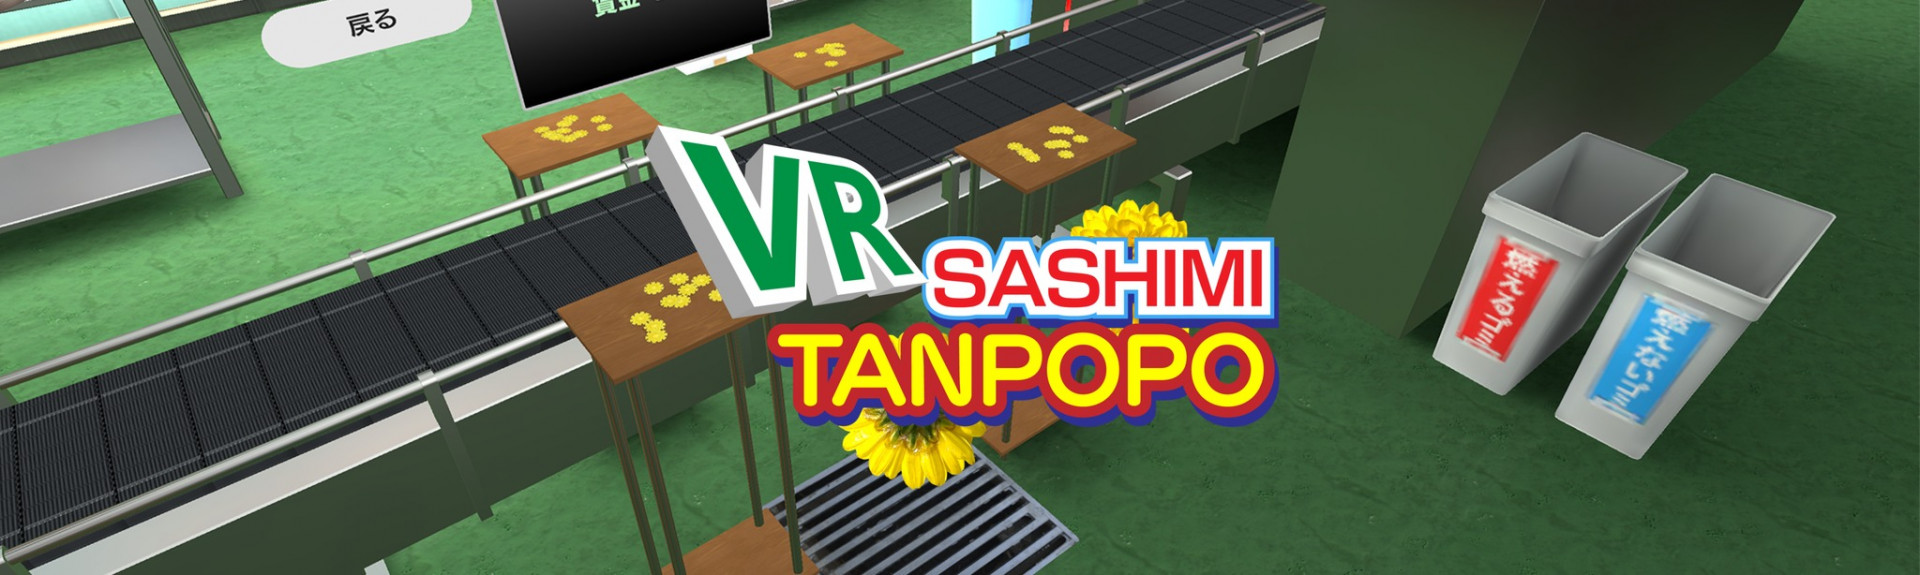 VR Sashimi Tanpopo